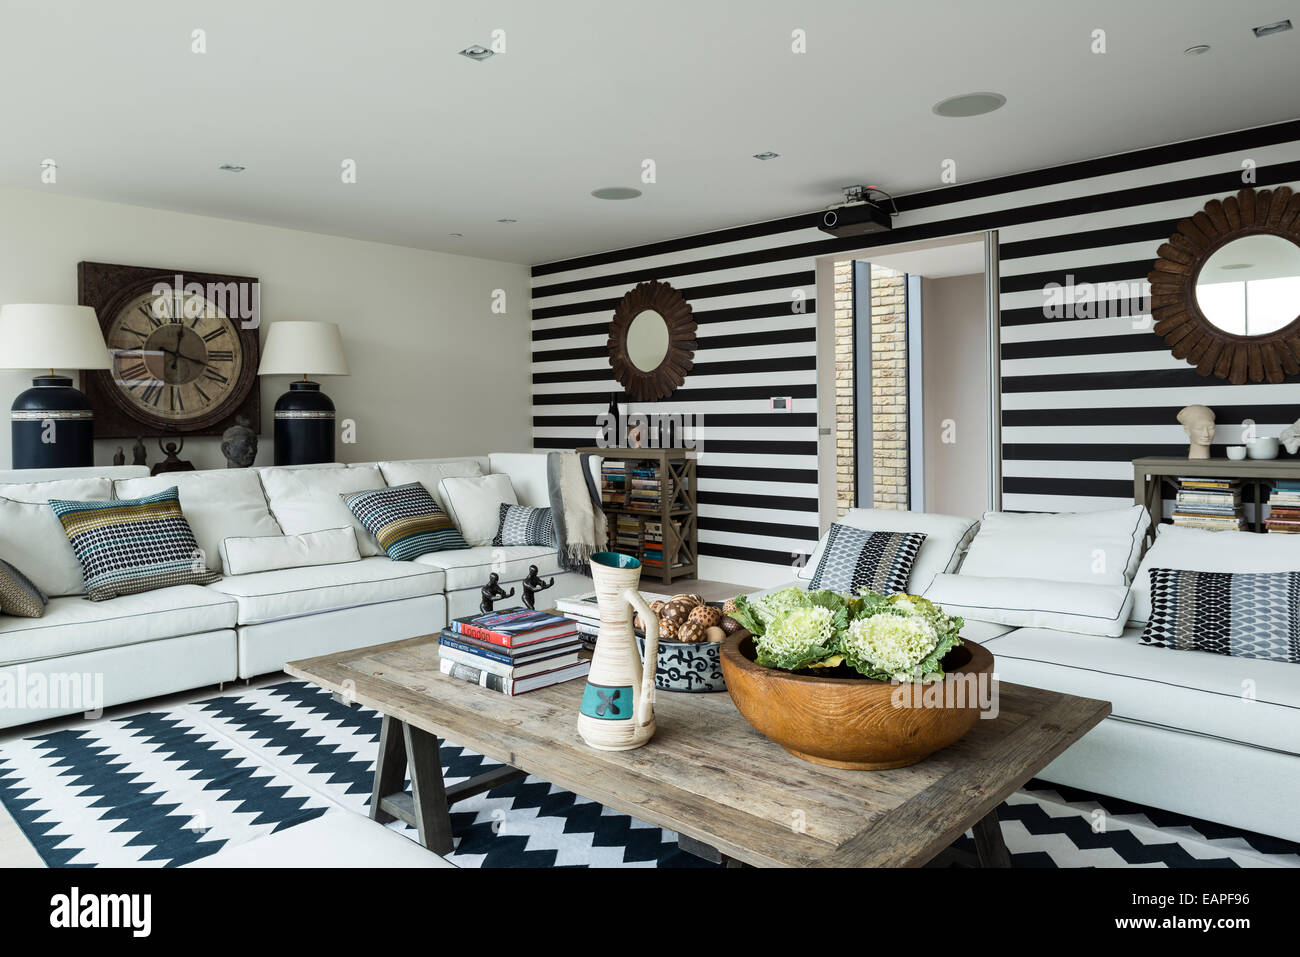 Mur rayé noir et blanc dans la salle de séjour avec chevron tapis à motifs. Le Brooklyn 5-pièces et la table basse en bois les deux c Banque D'Images